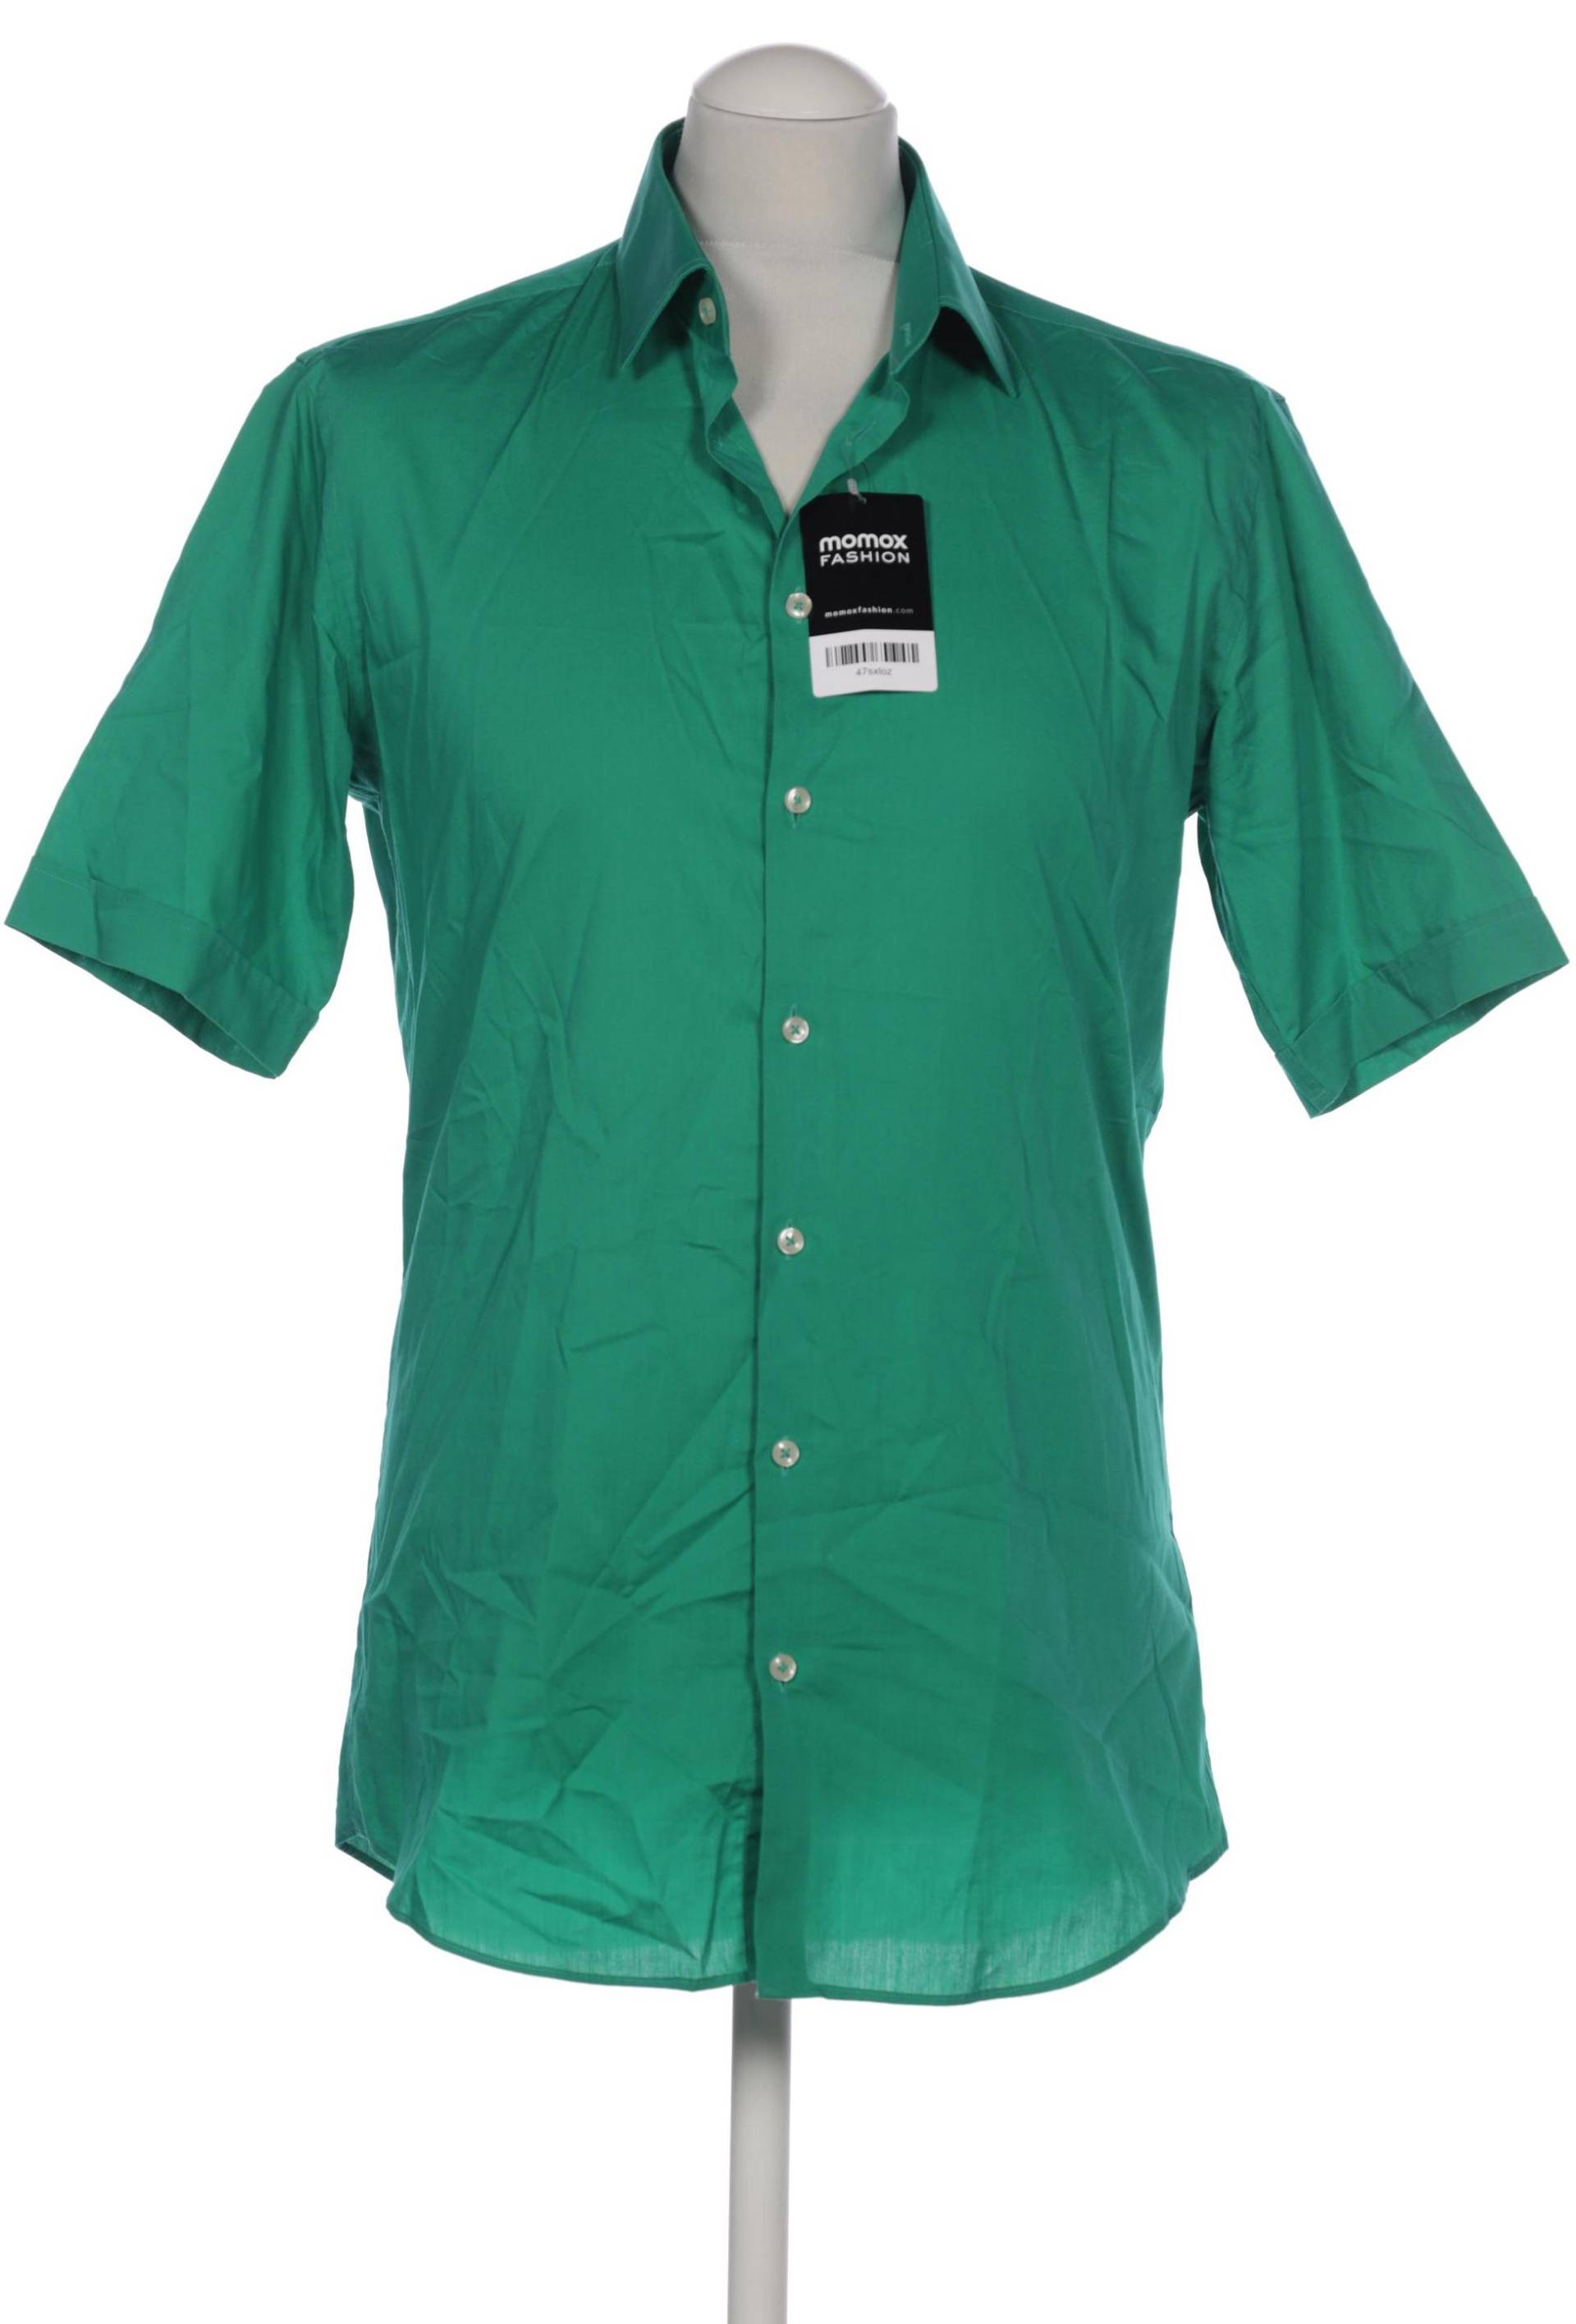 Montego Herren Hemd, grün von montego